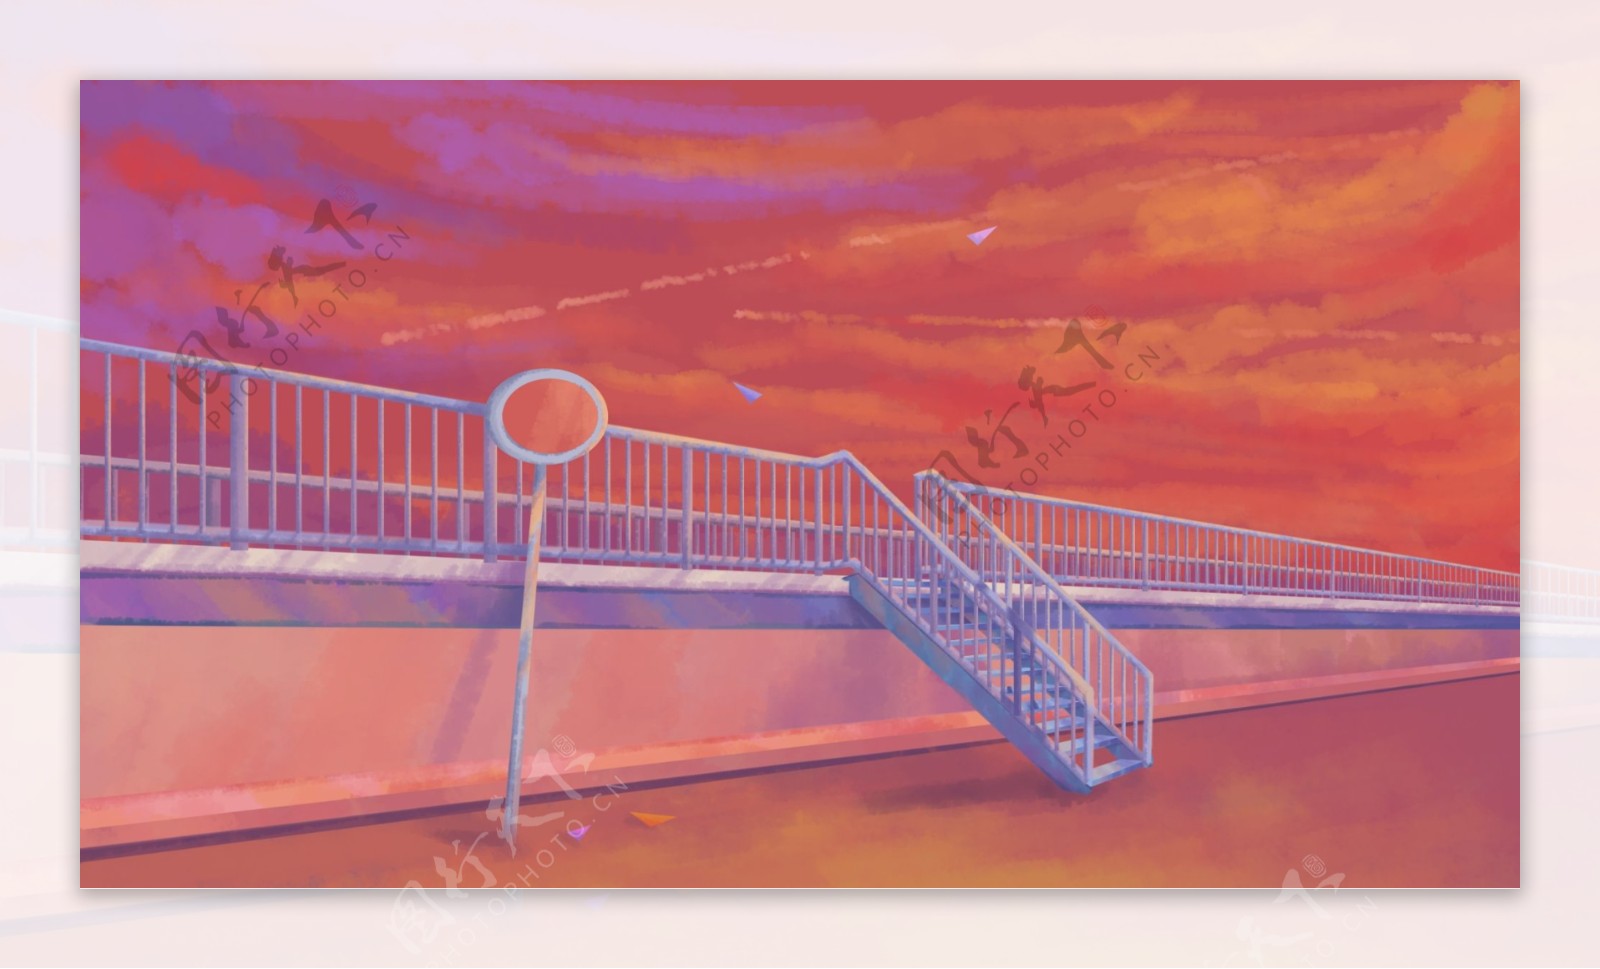 长长的观光桥卡通背景